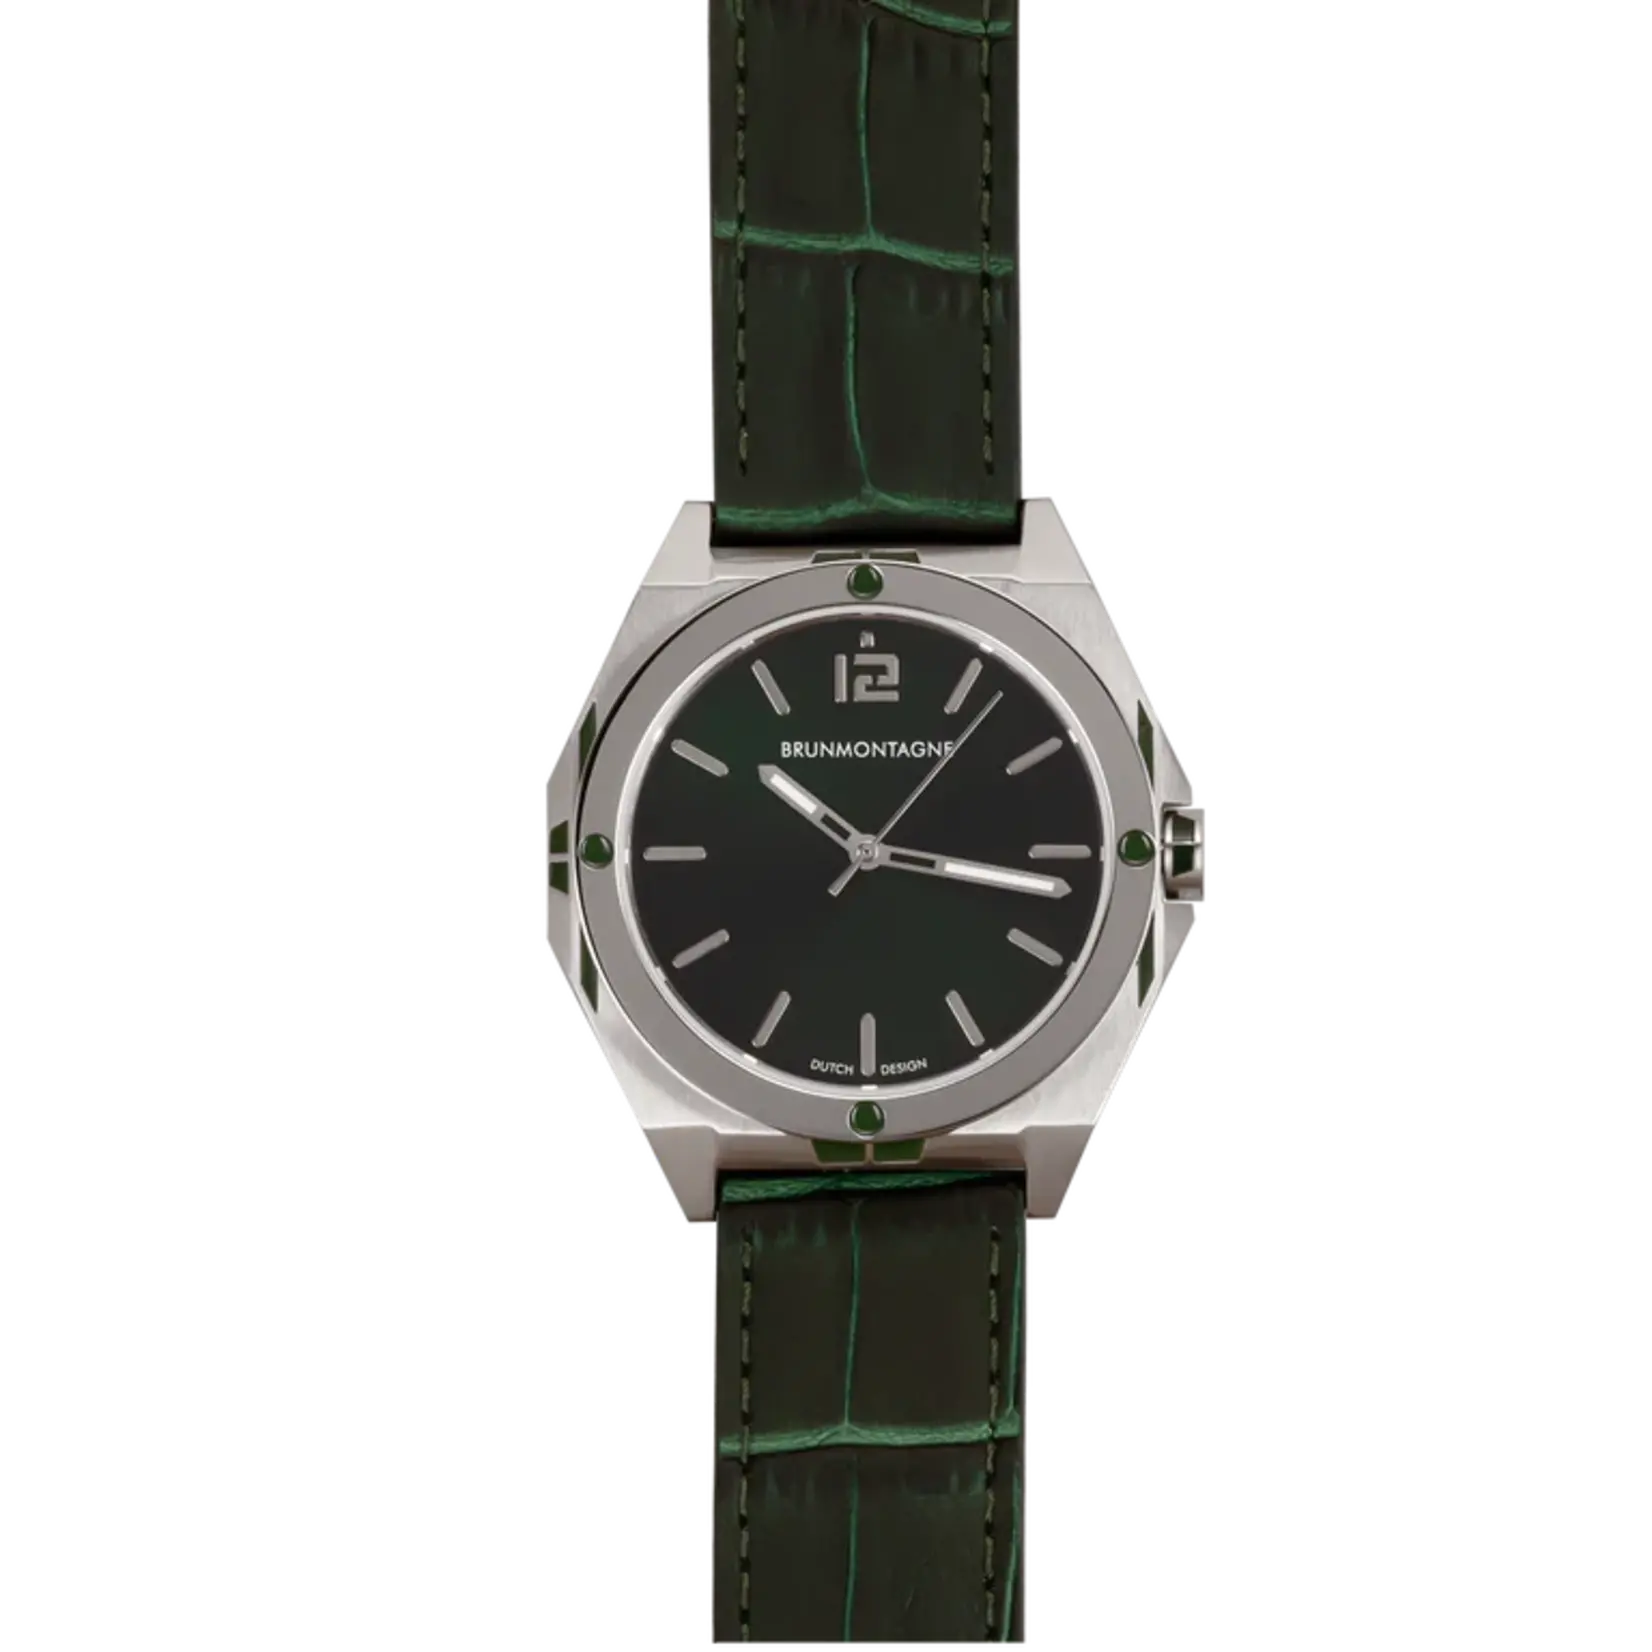 Brunmontagne Brunmontagne  horloge Representor Staal/Groen 42mm automaat